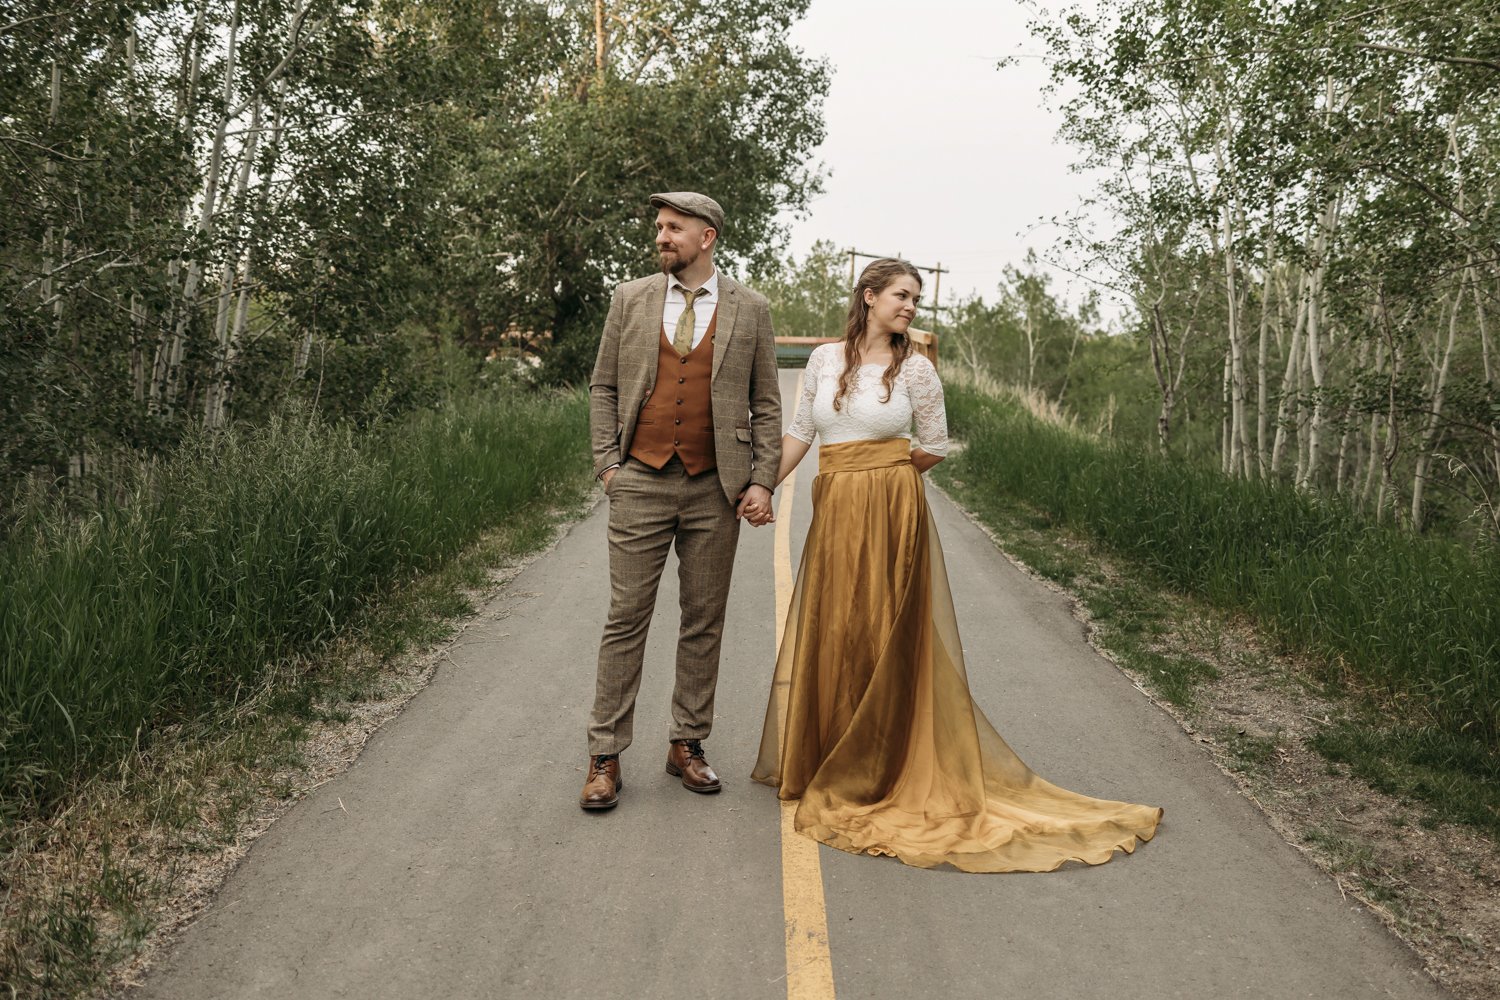 Edmonton Wedding Photography